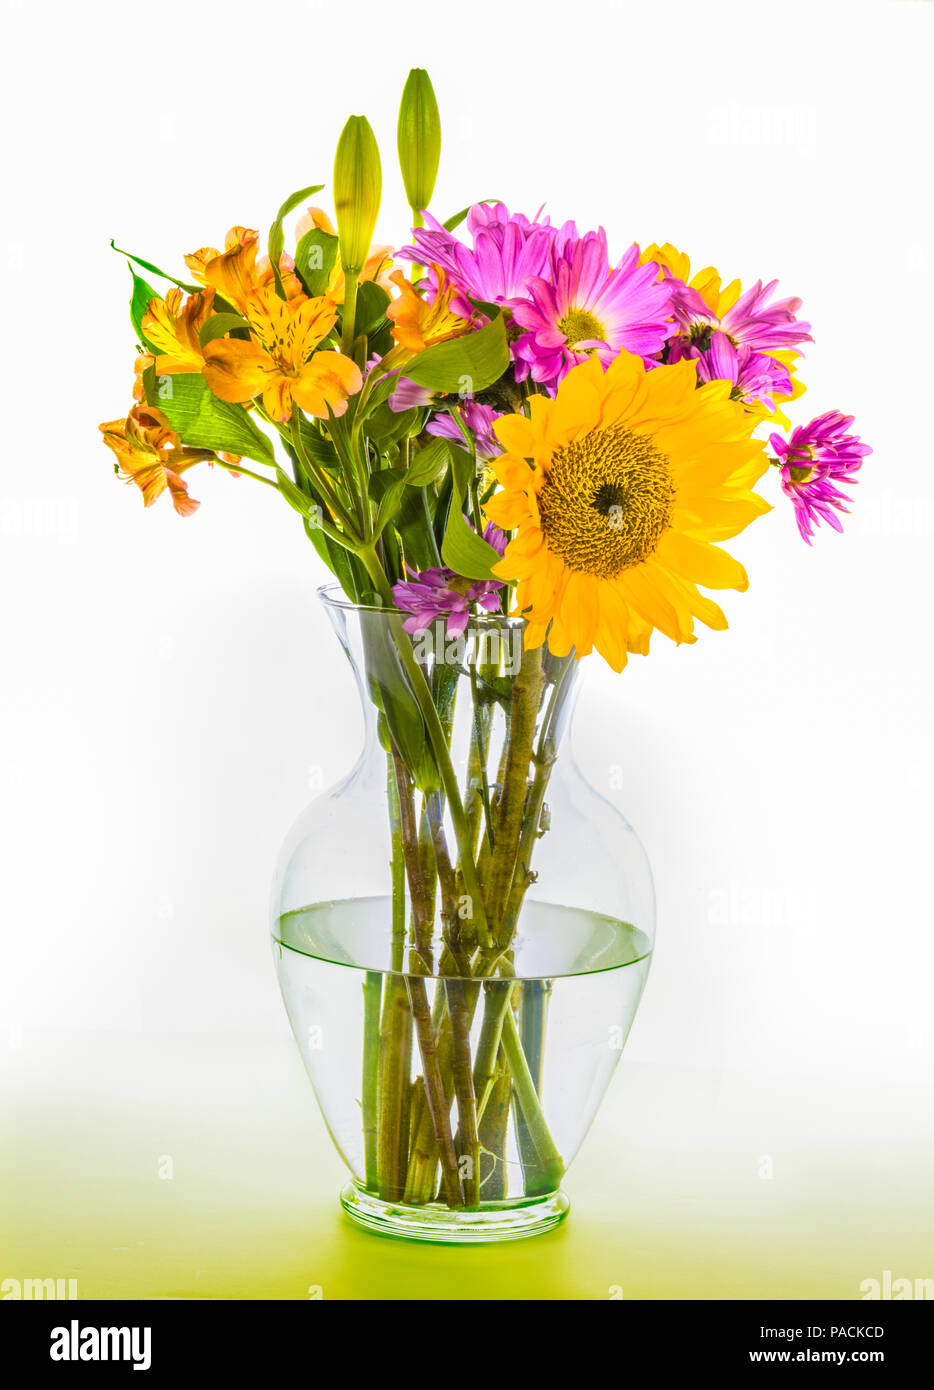 Attraktive blumenstrauß Anordnung von bunten Blumen in klarem Glas Vase Stockfoto